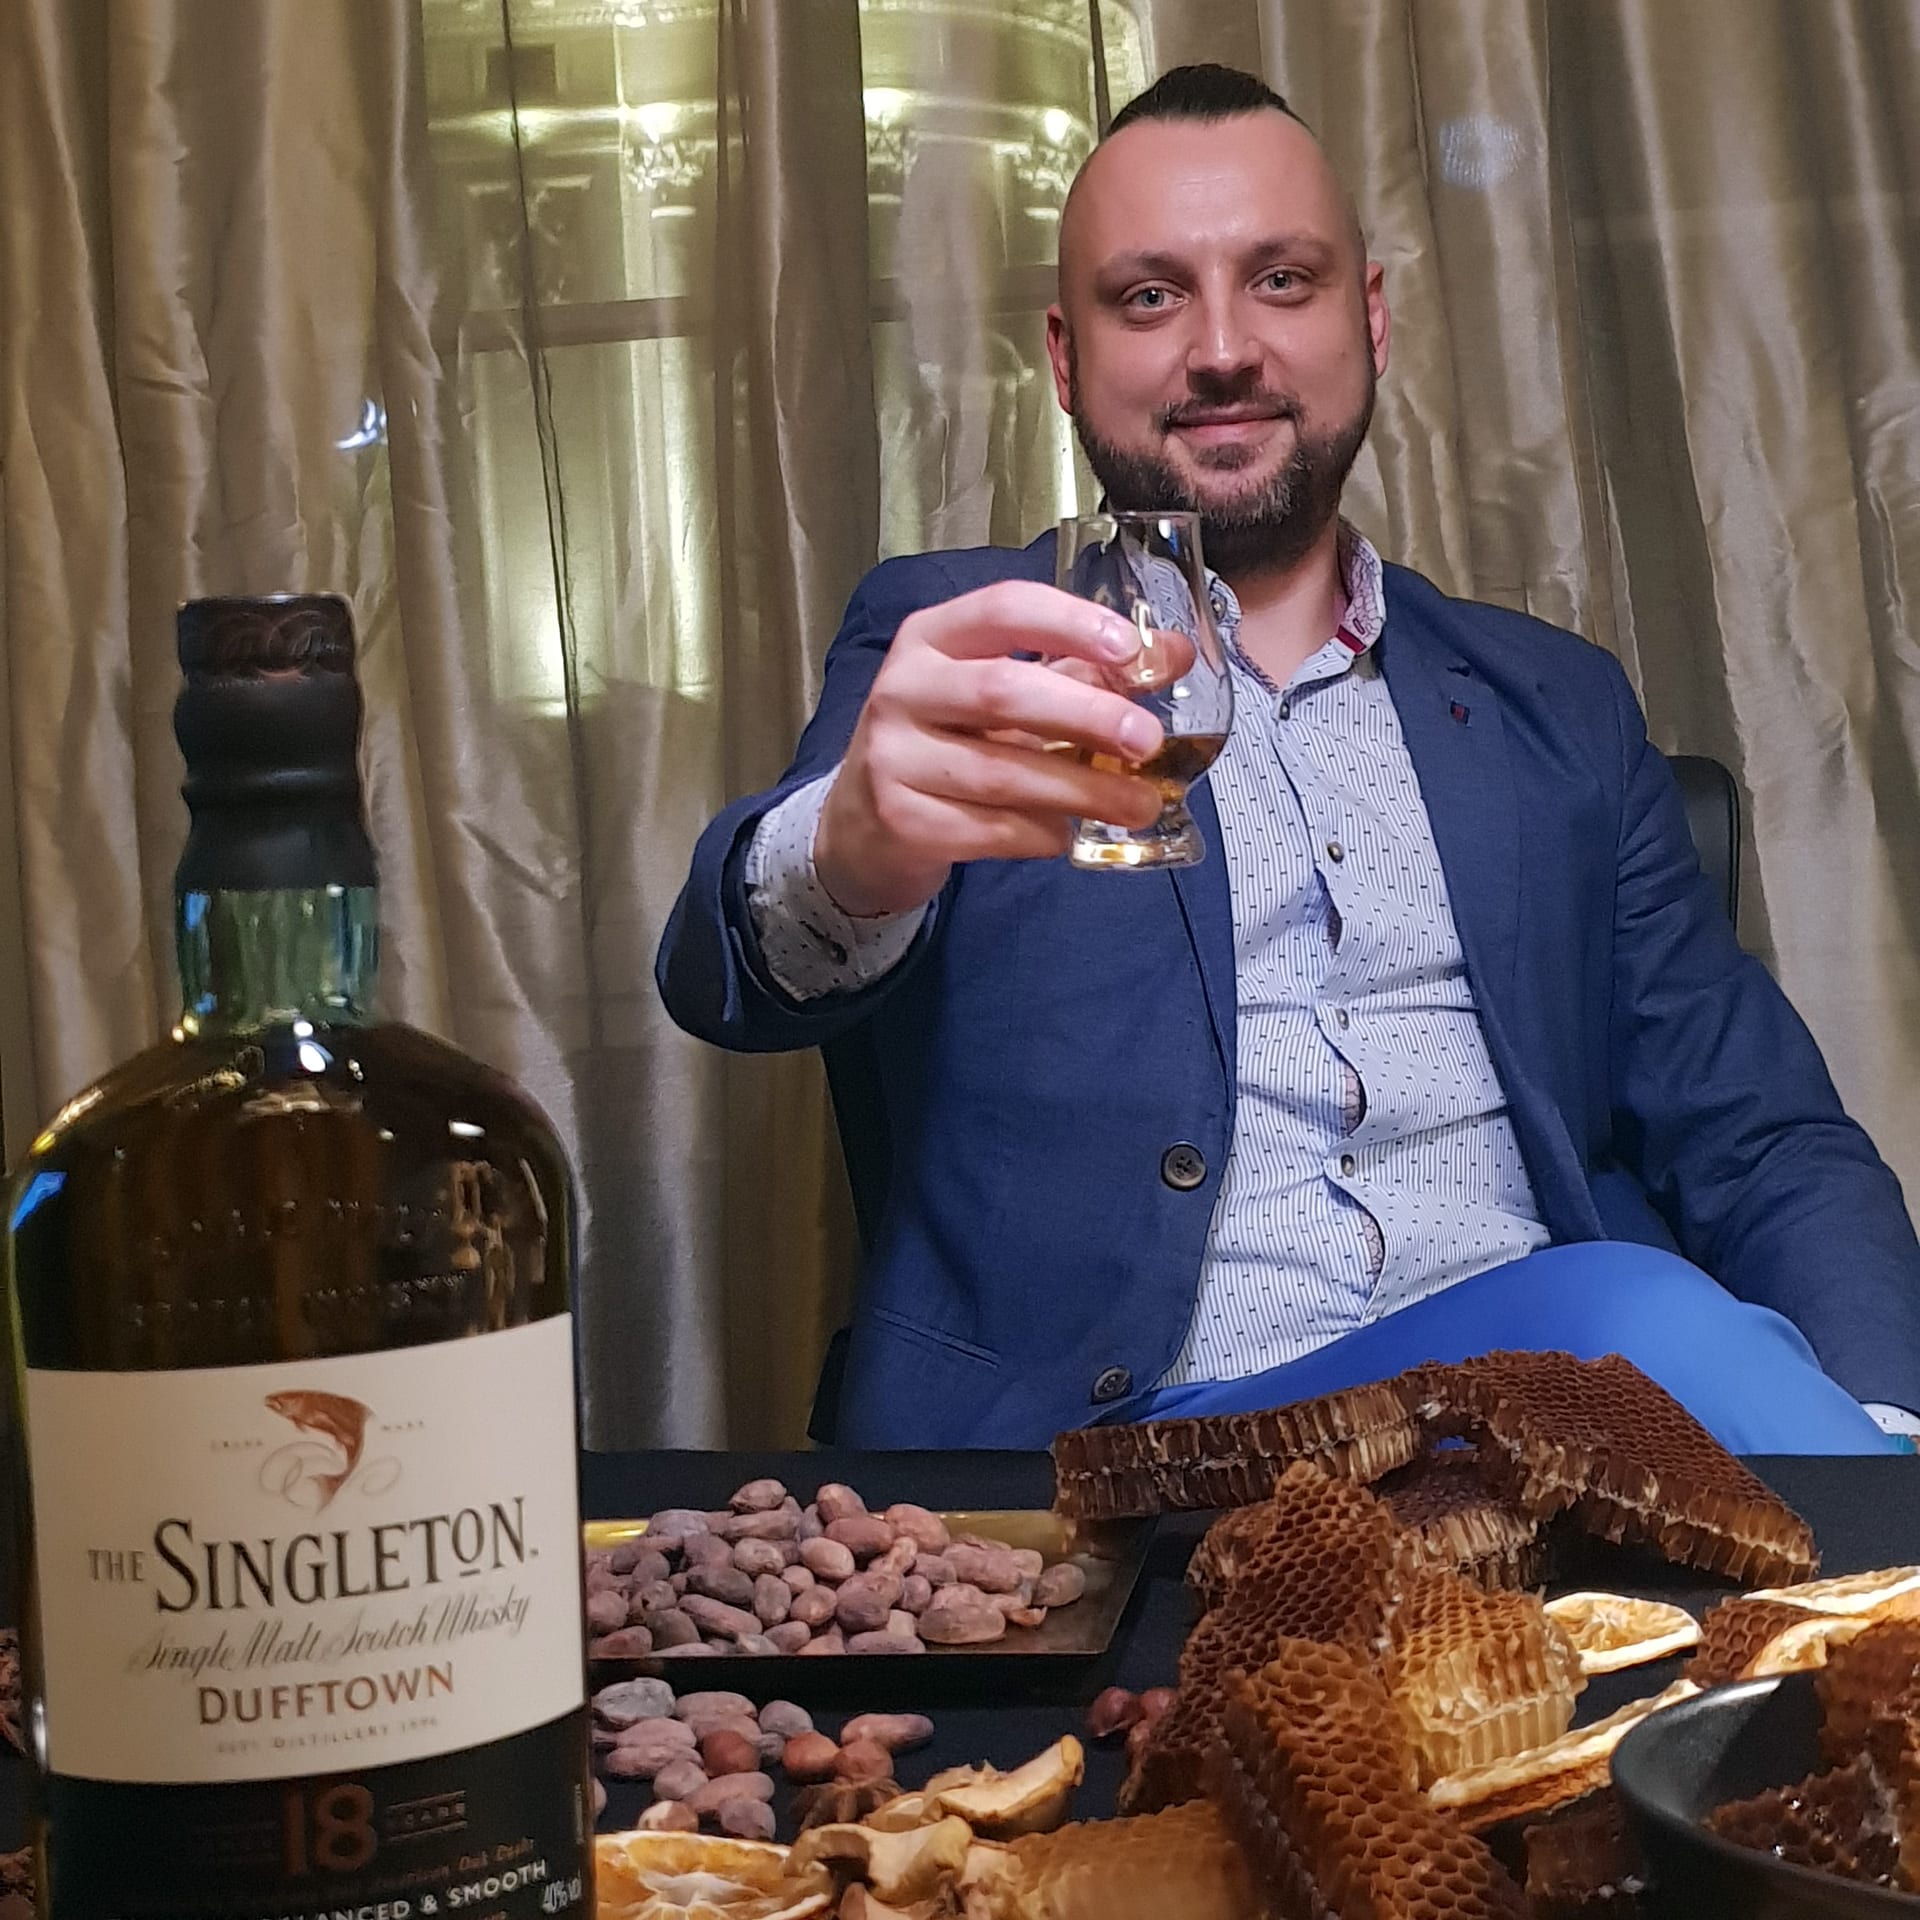 Whisky Singleton - toast wznoszony przez mężczyznę w ciepłym nastroju